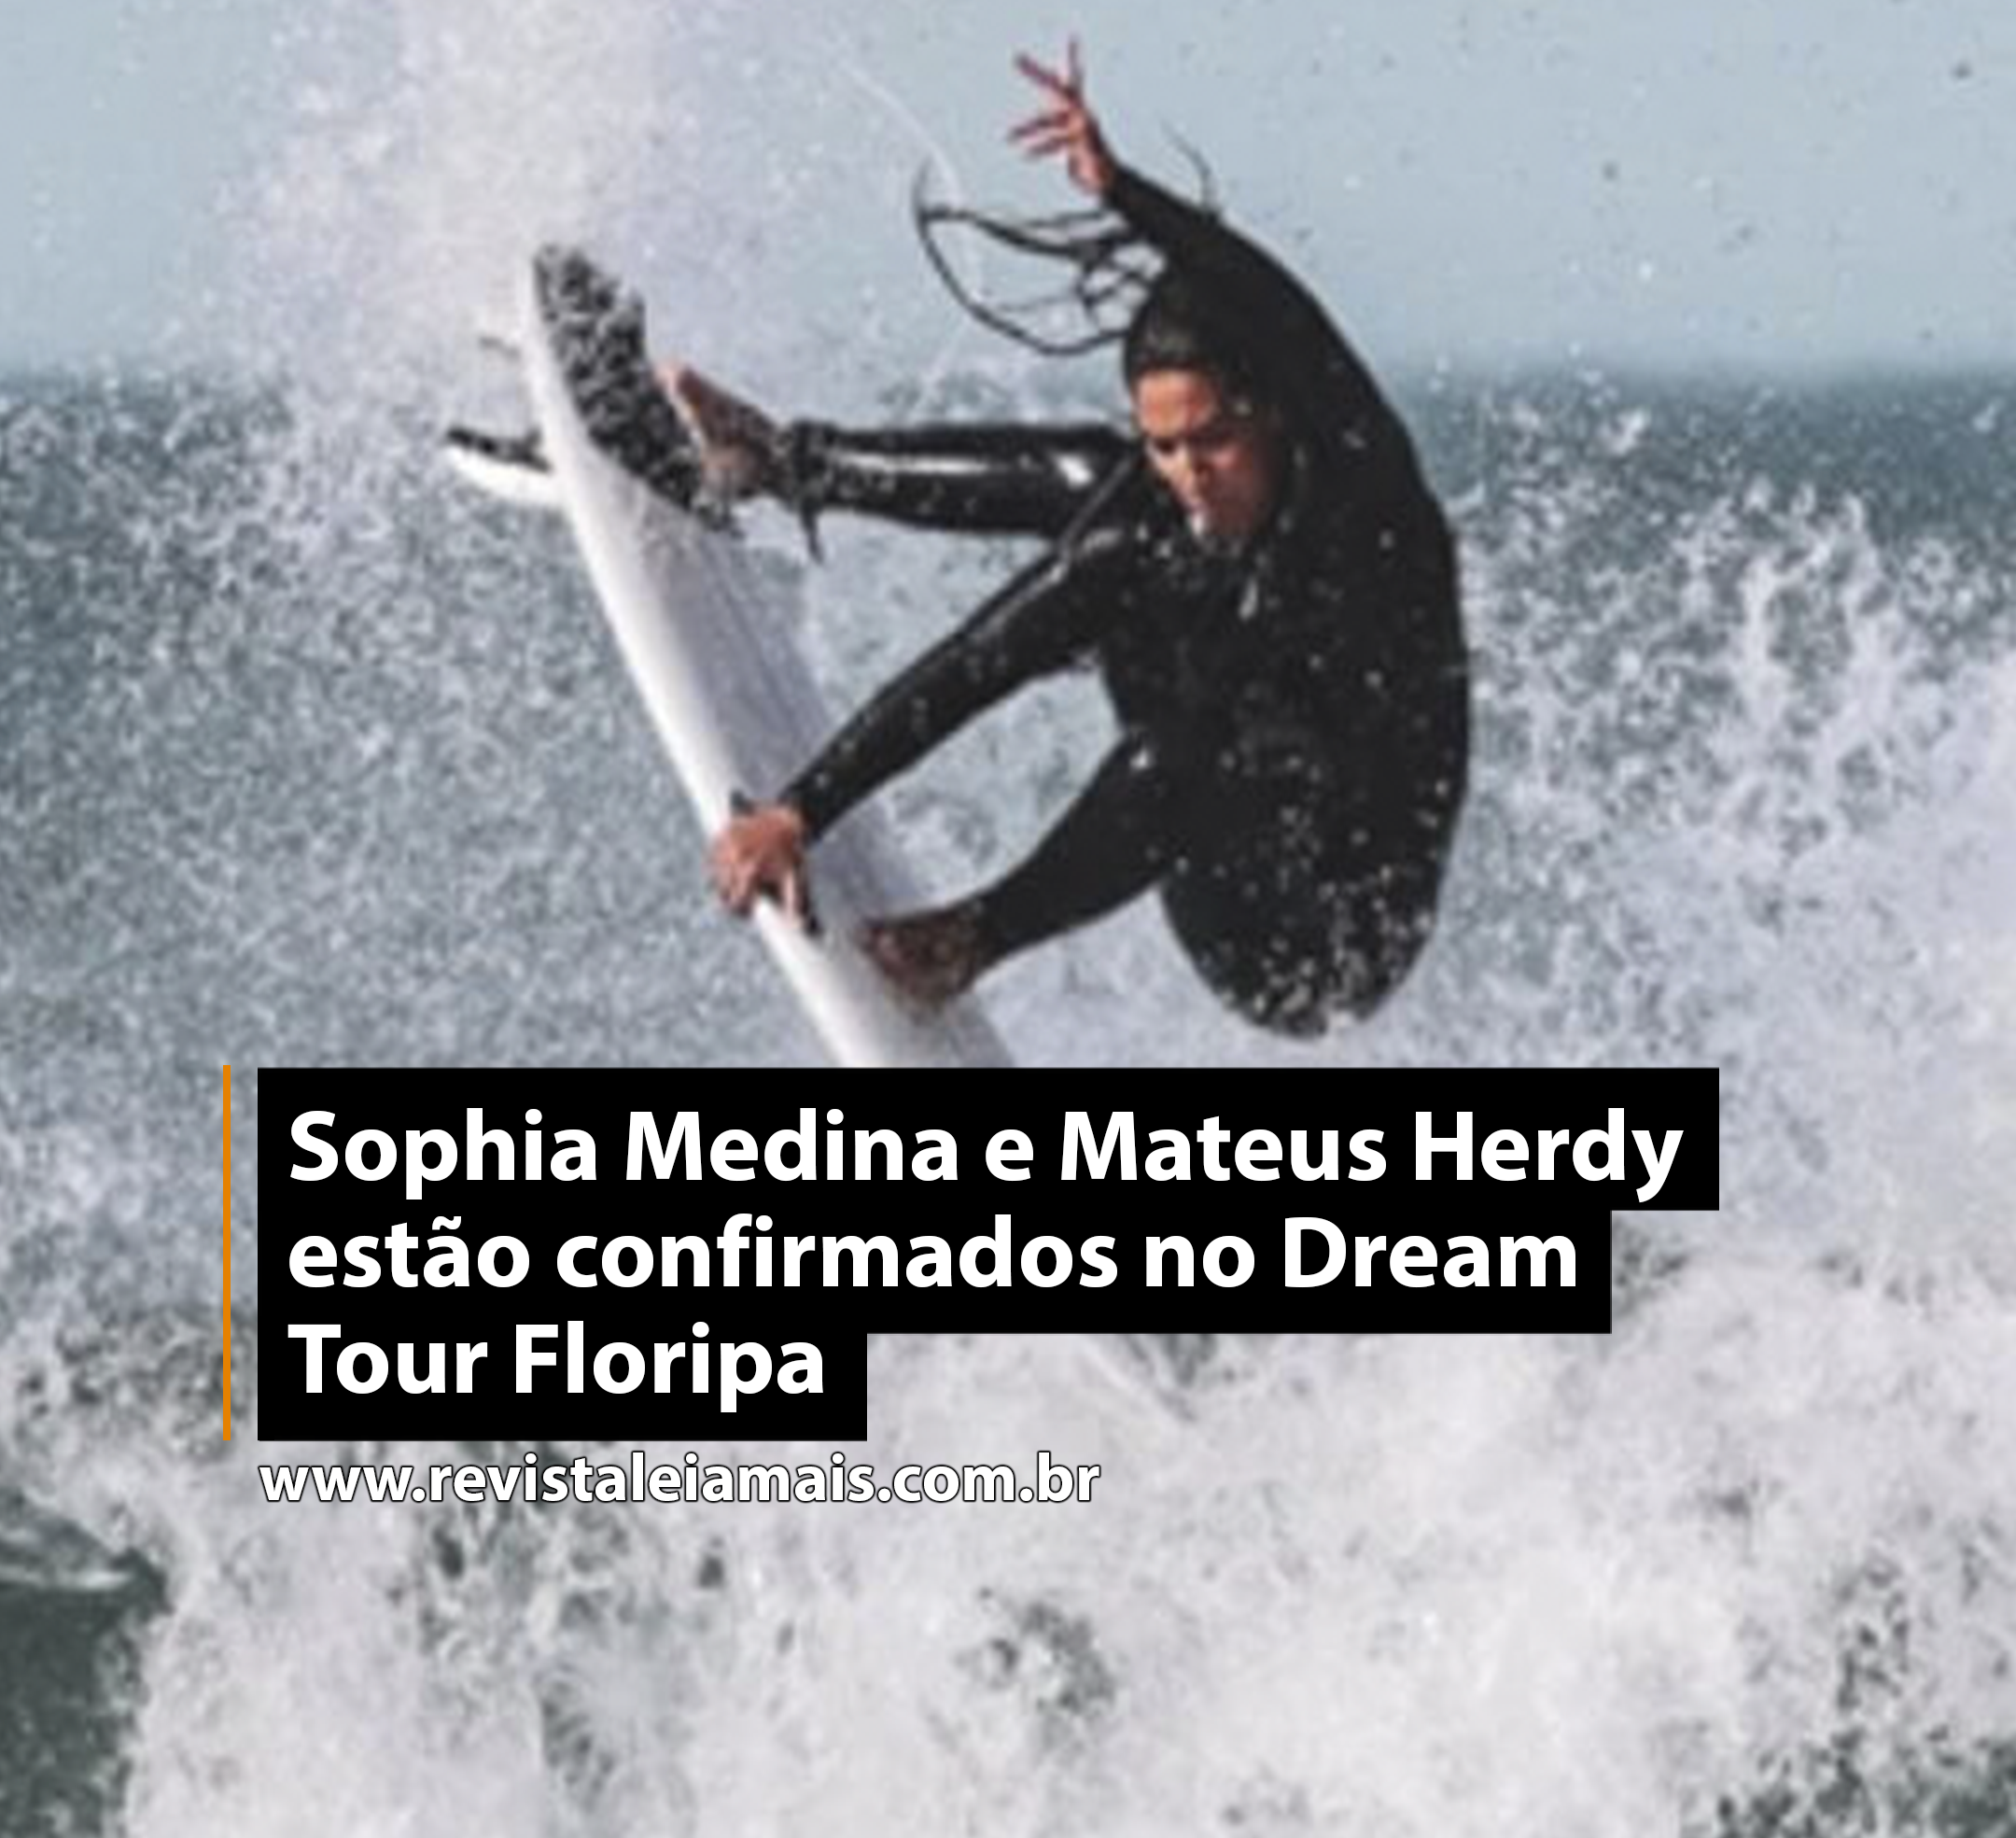 Sophia Medina e Mateus Herdy estão confirmados no Dream Tour Floripa